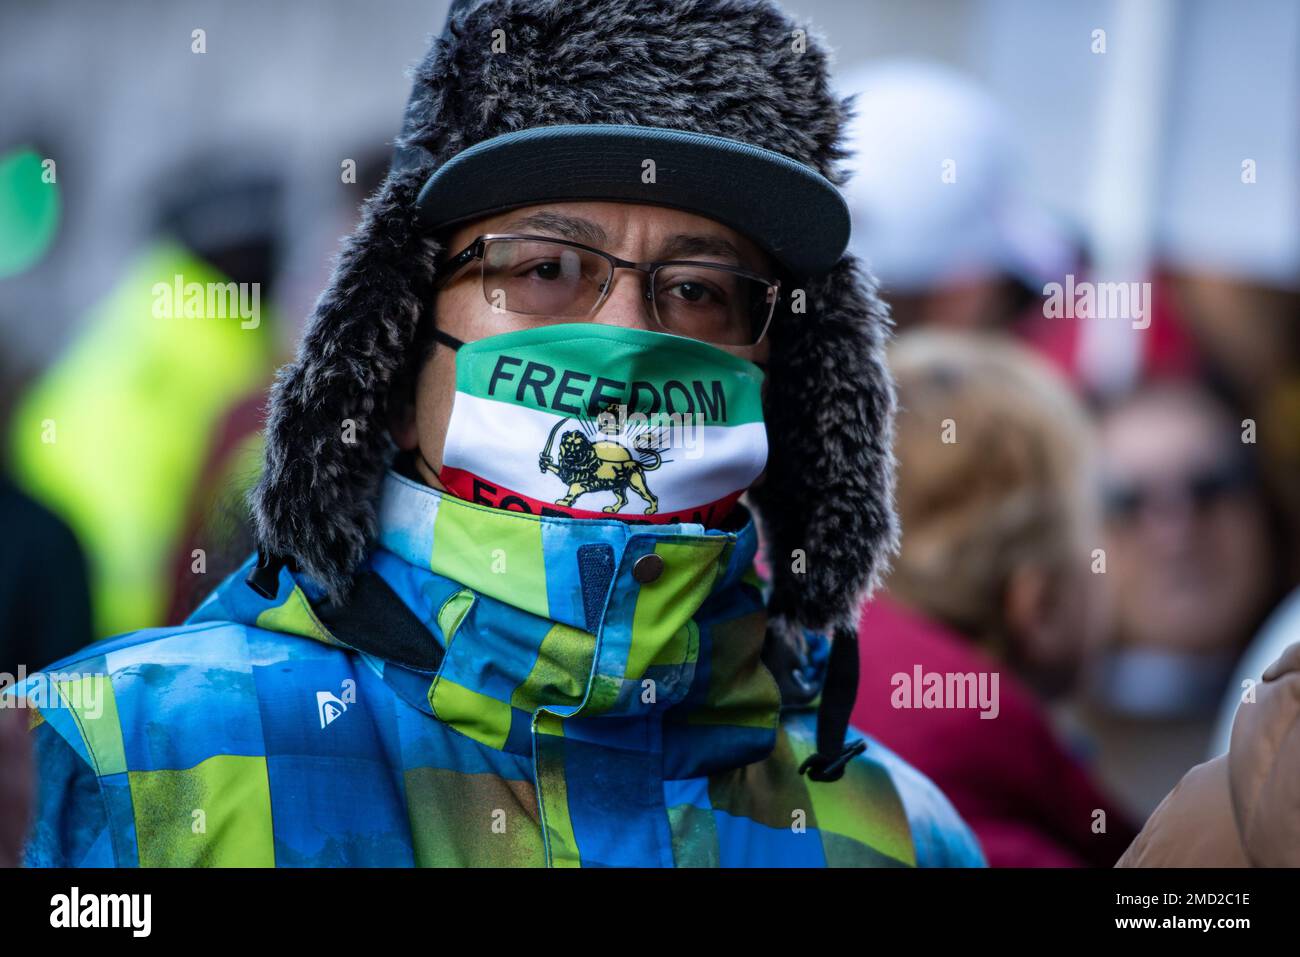 Ein Demonstrant trägt eine Gesichtsmaske, die während der "Unterstützung der iranischen Revolution" "Freiheit für den Iran" sagt. Protest. Die Demonstranten haben sich in London zur Unterstützung der Frauen im Iran versammelt, während sie für ihre Freiheit kämpfen. Nach dem Tod einer 22-jährigen Frau im Iran, Mahsa Amini, durch die Hände der „Moralpolizei“, weil sie ihre Haare nicht richtig vertuscht hatte, sind die Frauen des Iran auf die Straße gegangen, um ihre Freiheit zu fordern. Frauen im Iran sind gezwungen, sich an obligatorische Tarngesetze zu halten, und können sich wegen der Nichteinhaltung der Kleiderordnung mit Inhaftierung, Belästigung und Folter konfrontiert sehen. (Foto von Loredana Sangiulian Stockfoto